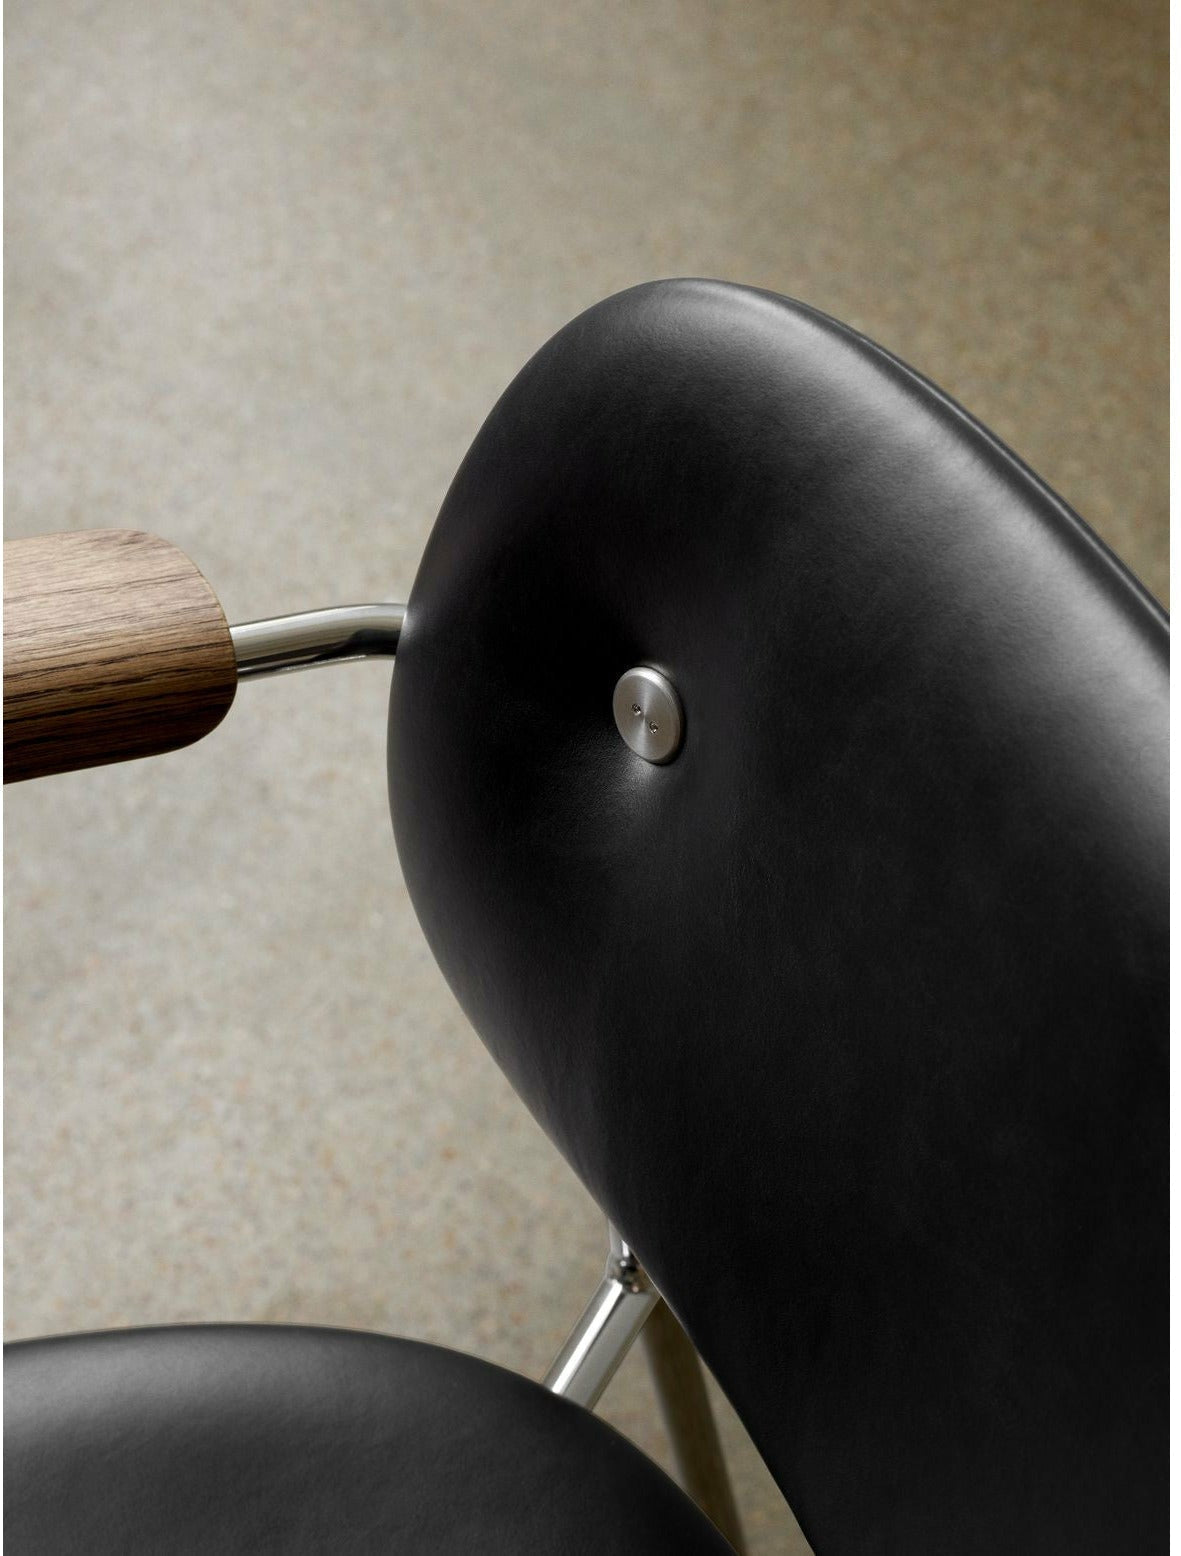 Audo Copenhagen Co chaise pleine rembourrage complet avec un accoudoir en chêne taché, chrome / dakar 0842